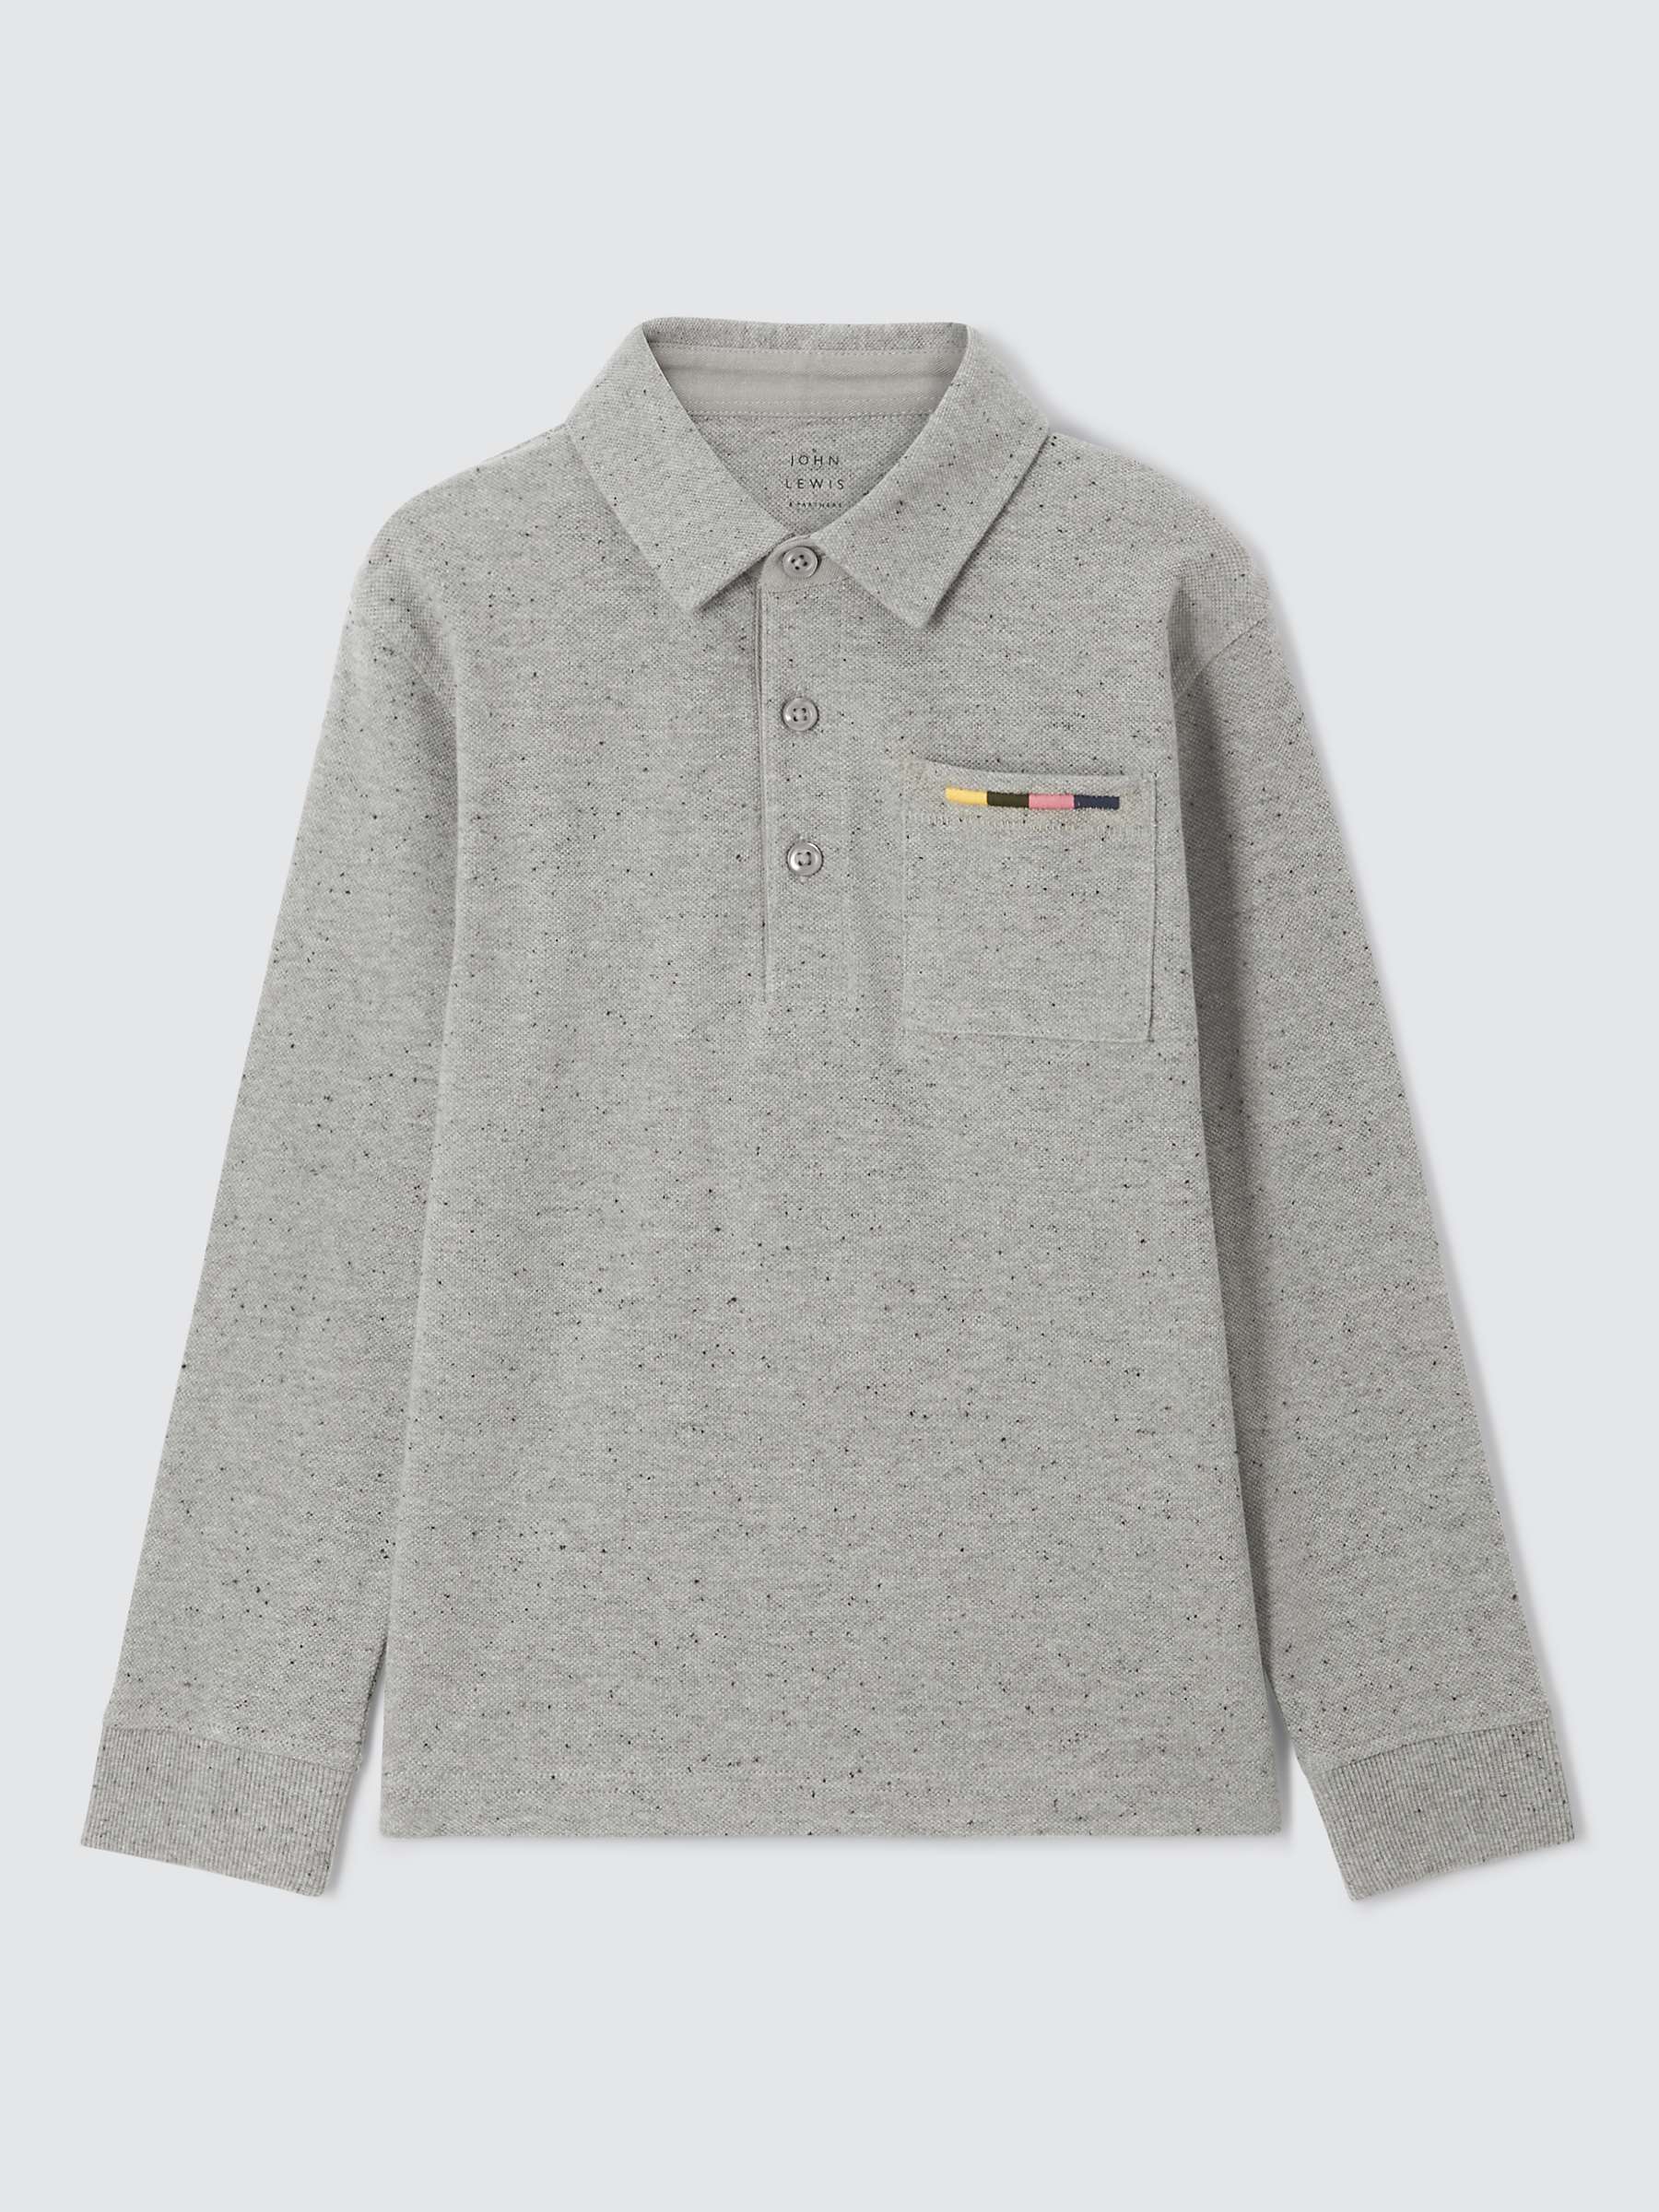 Buy John Lewis Kids' Piqued Marled Long Sleeve Polo Shirt, Grey Online at johnlewis.com